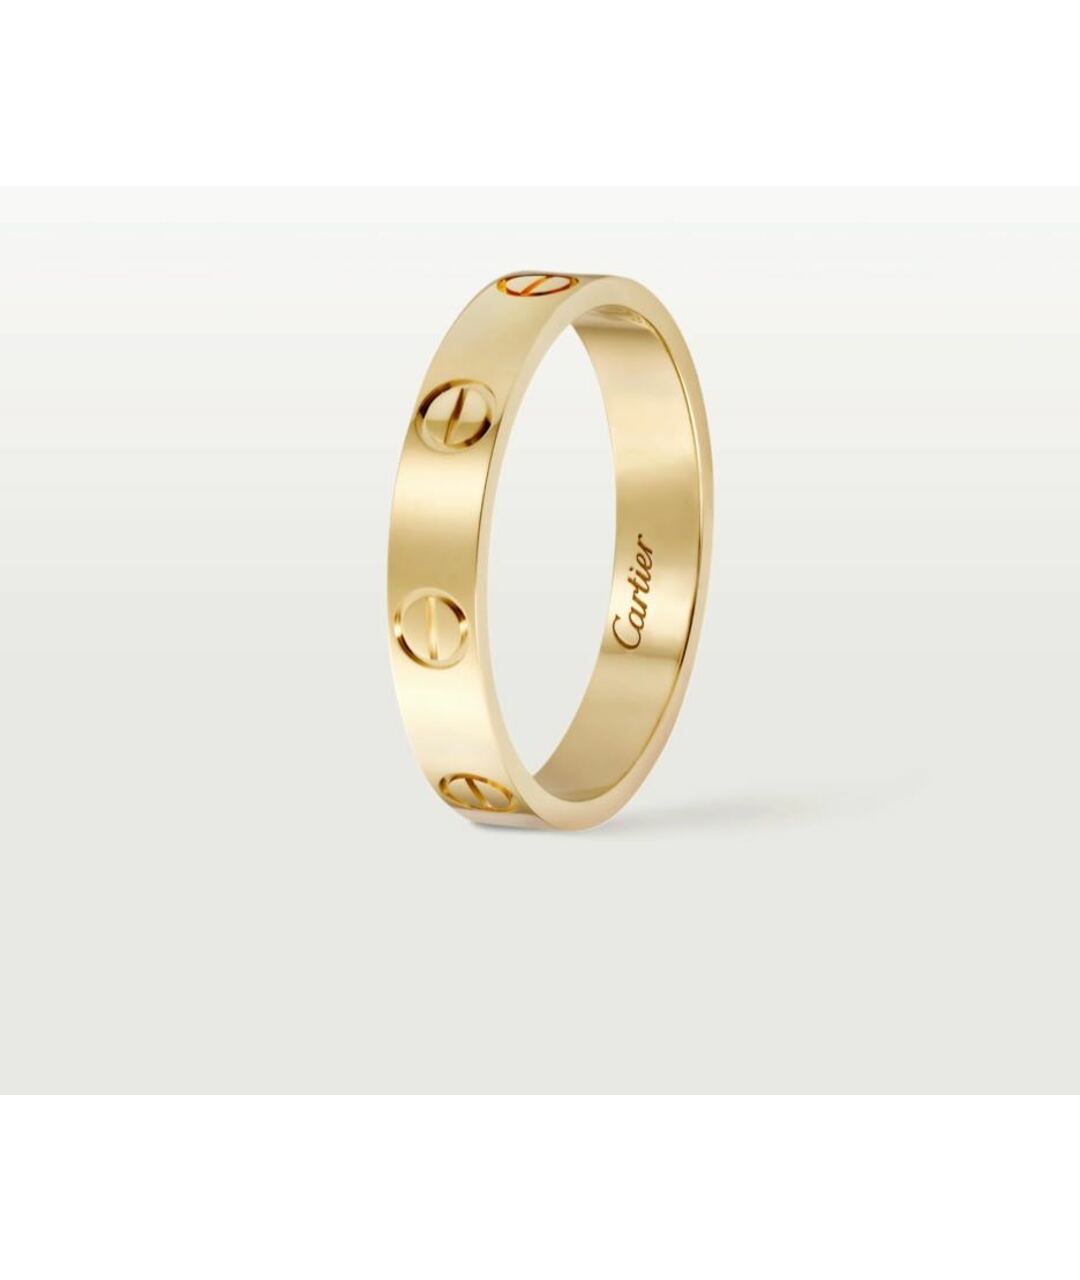 CARTIER Желтое кольцо из желтого золота, фото 2